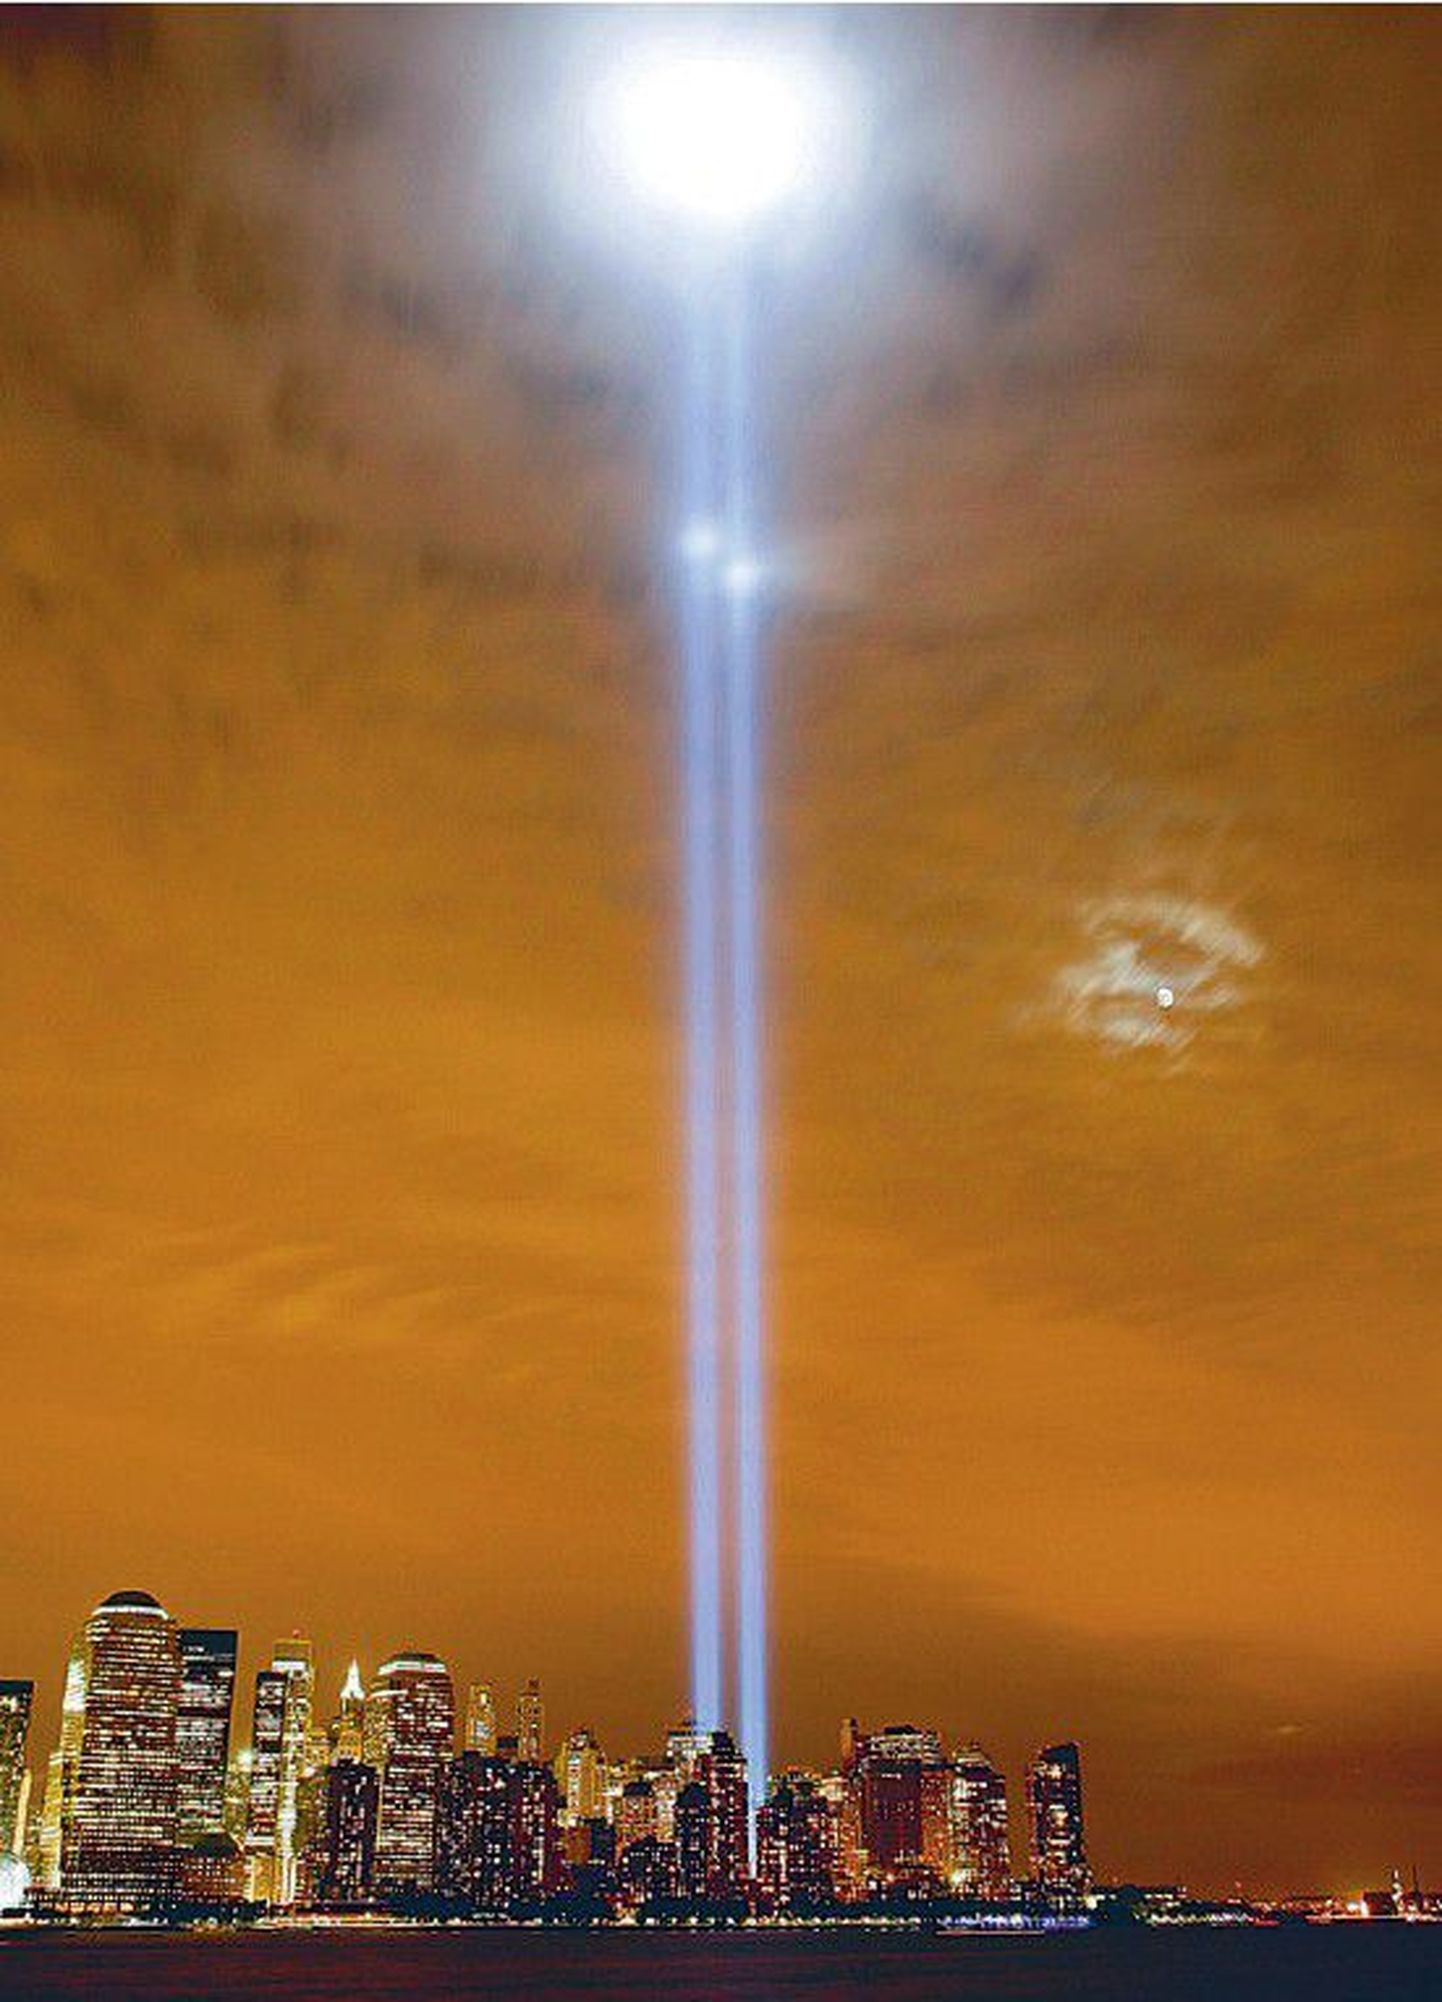 Kuu tõuseb Manhattani kohale, mille taevast valgustavad igal ööl ohvrite mälestuseks üles suunatud kaks sinist valgussammast.